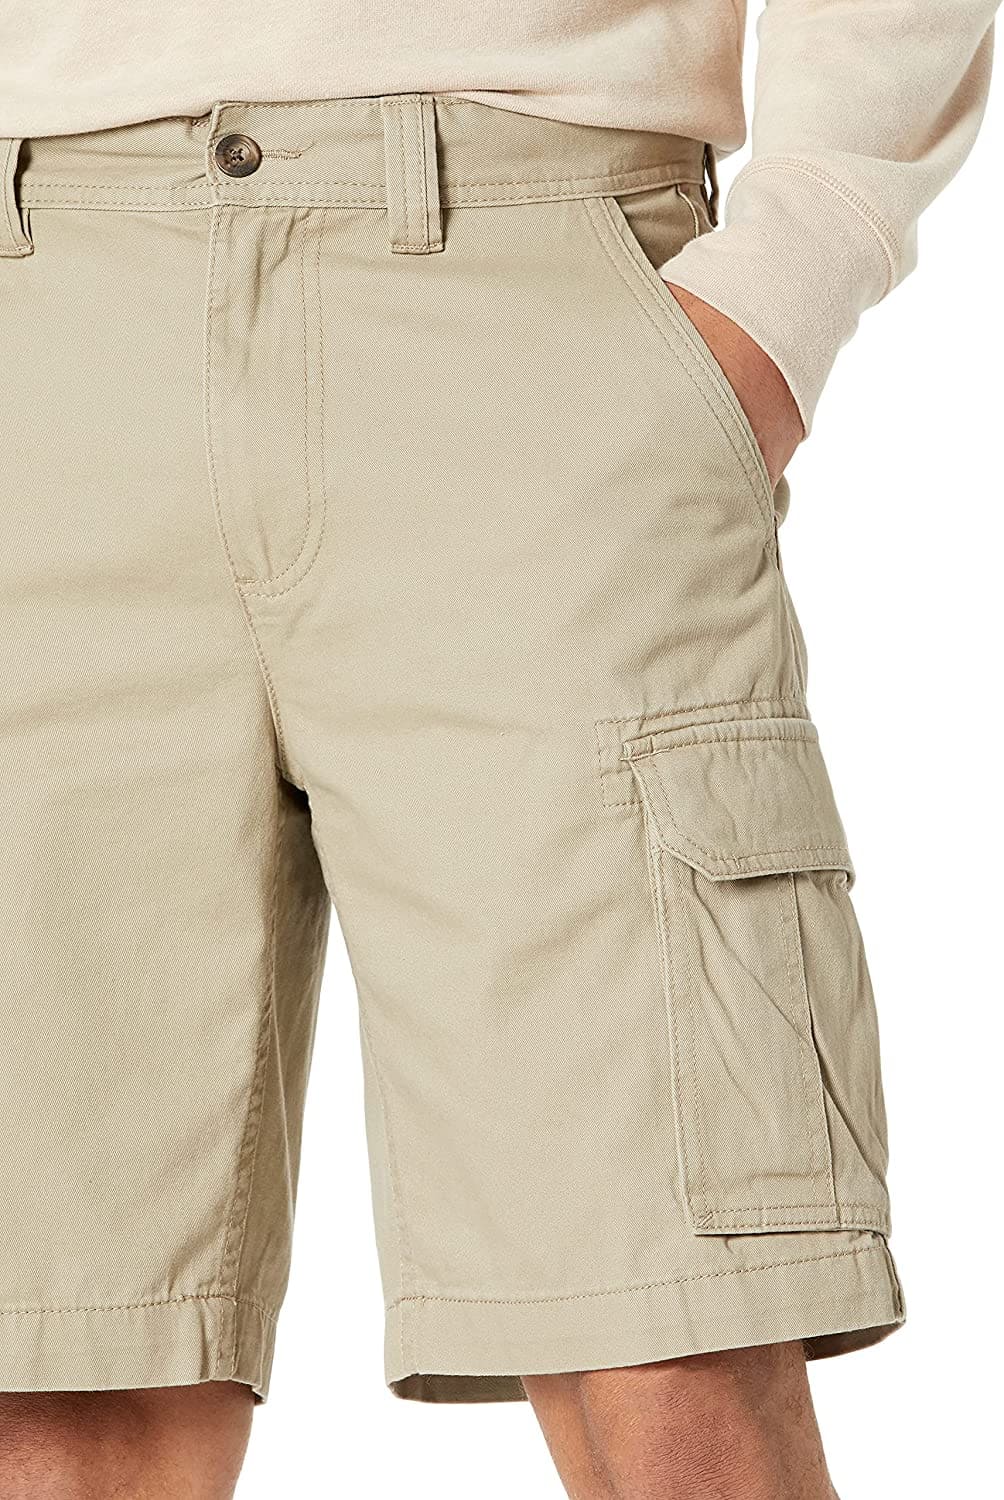 Amazon Essentials Men's Classic Fit 10 Cargo Pant